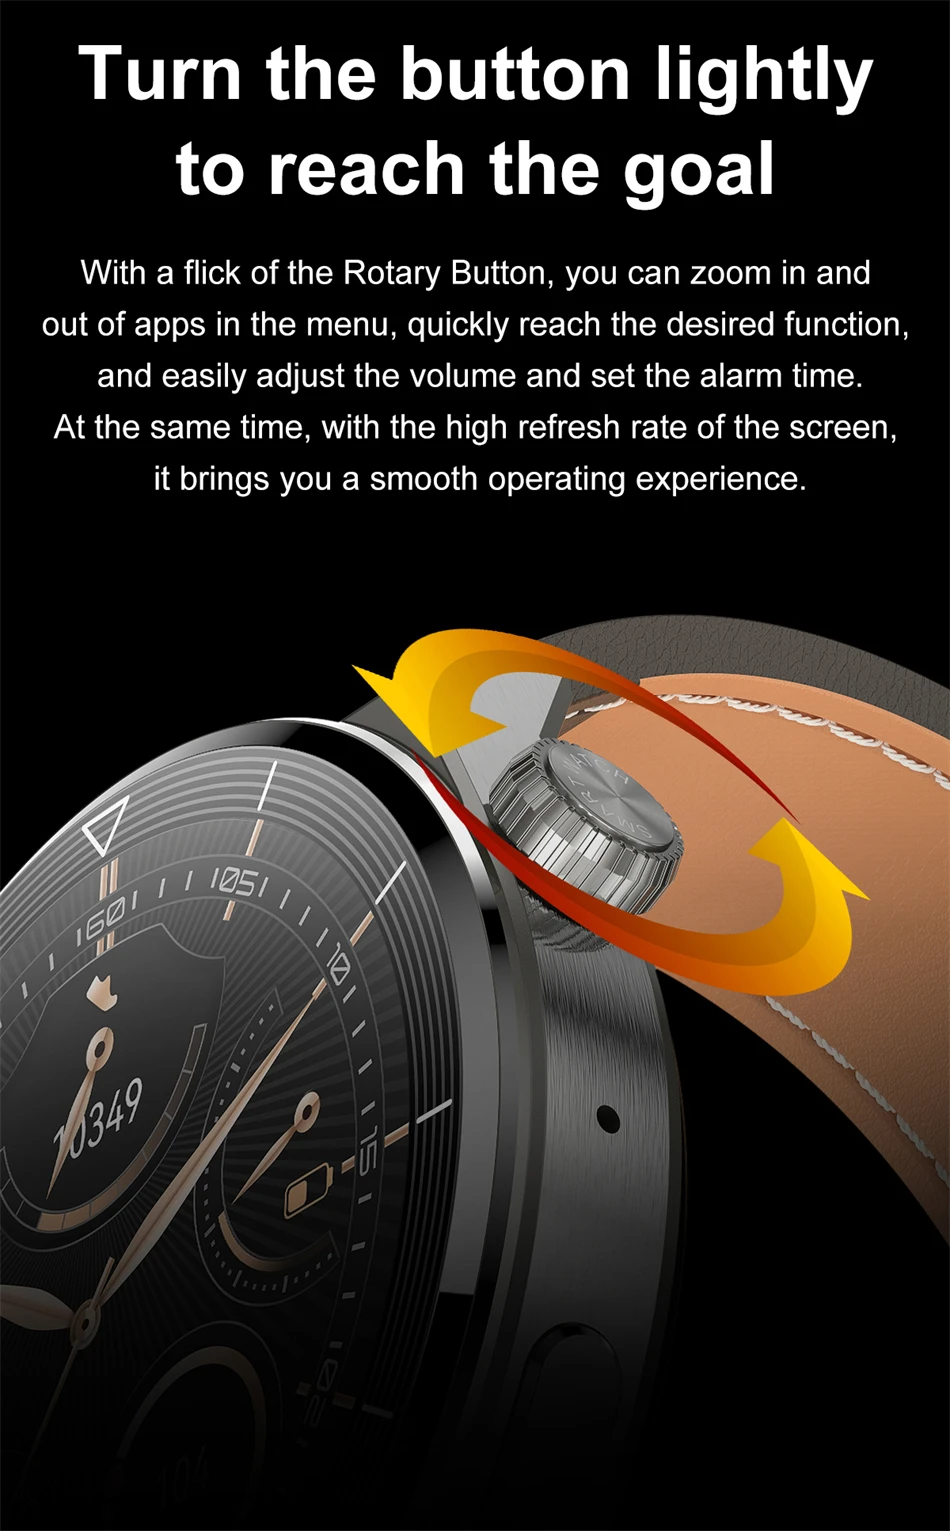 S14de70e7e53048cd9a1eac70885134c9s Unleash Your Potential with GT3 Pro Smart Watch